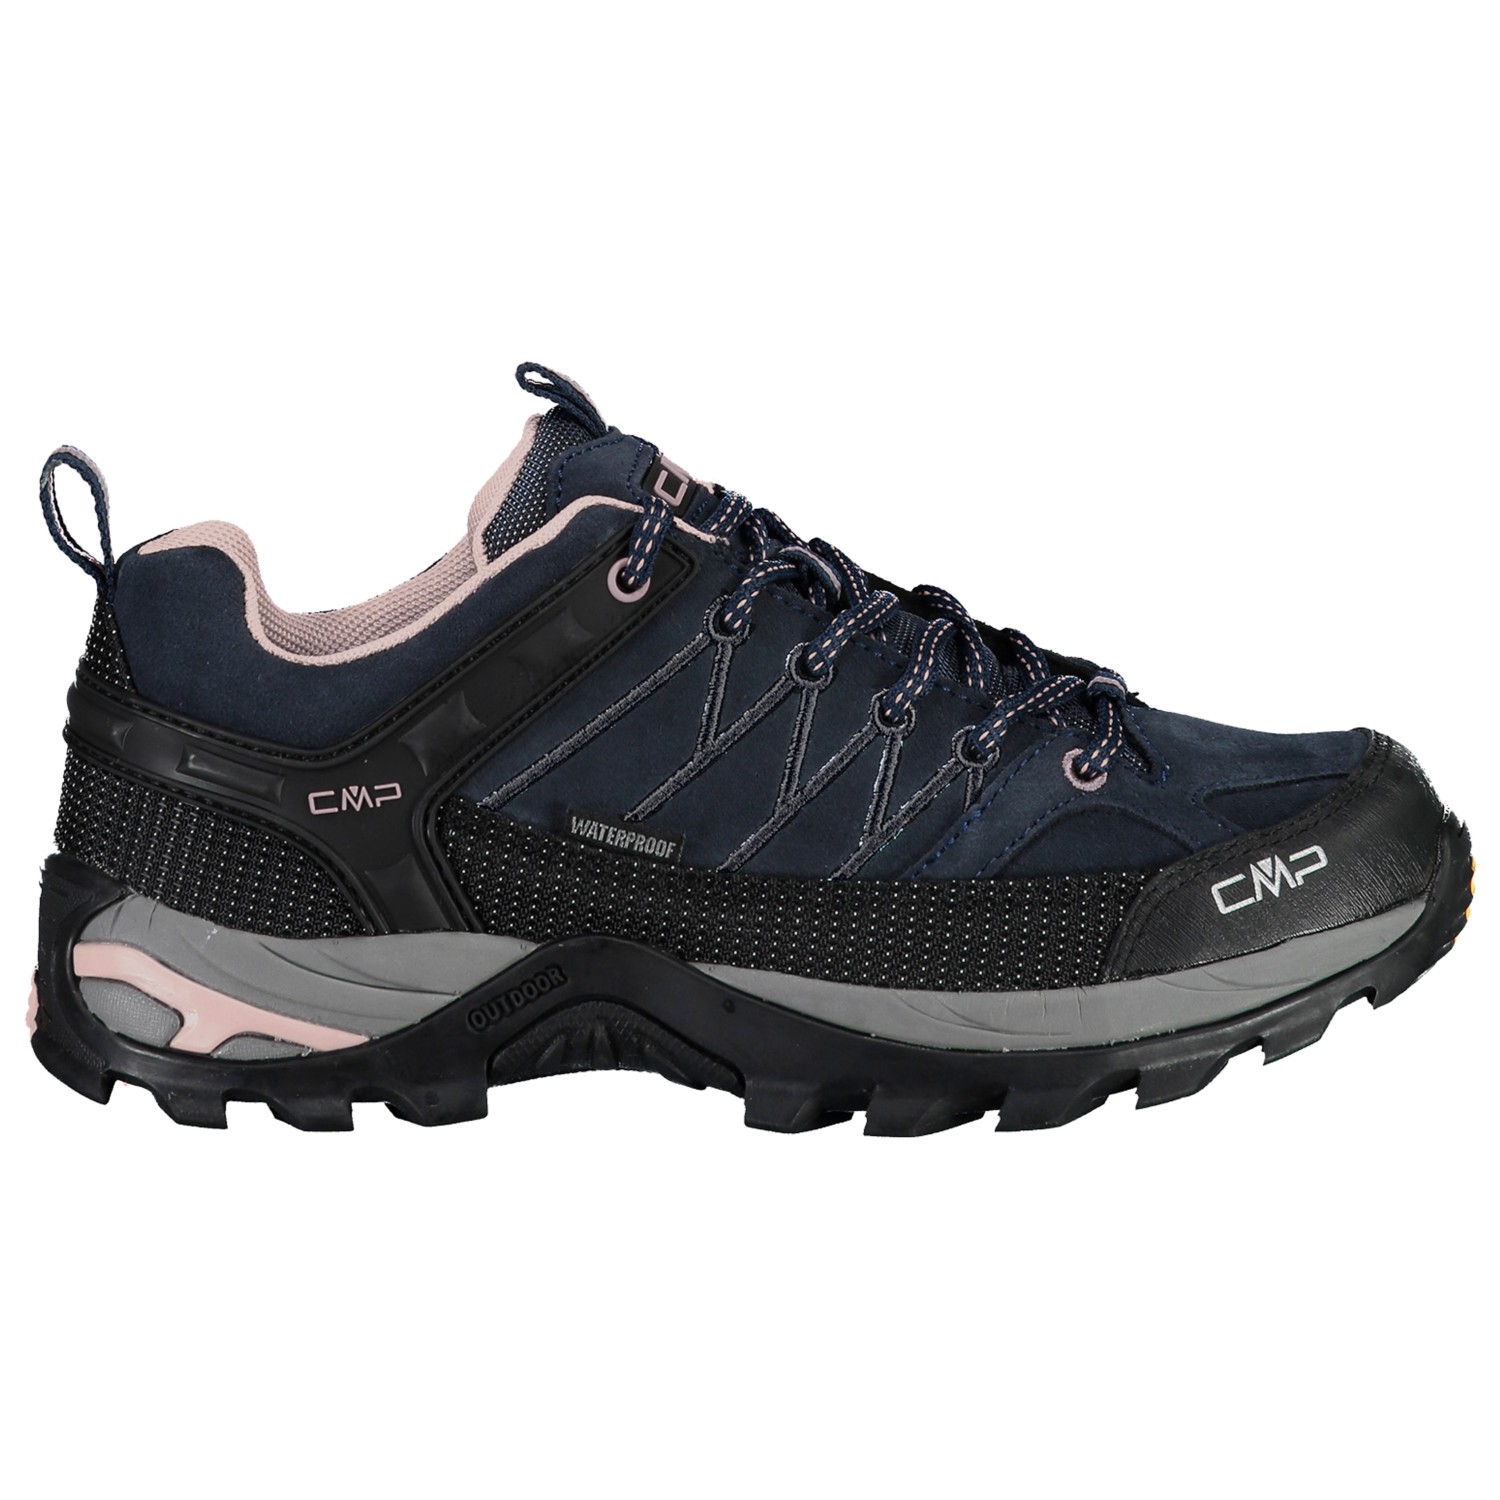 Мультиспортивная обувь Cmp Women's Rigel Low Trekking Shoes Waterproof, цвет Asphalt/Antracite/Rose